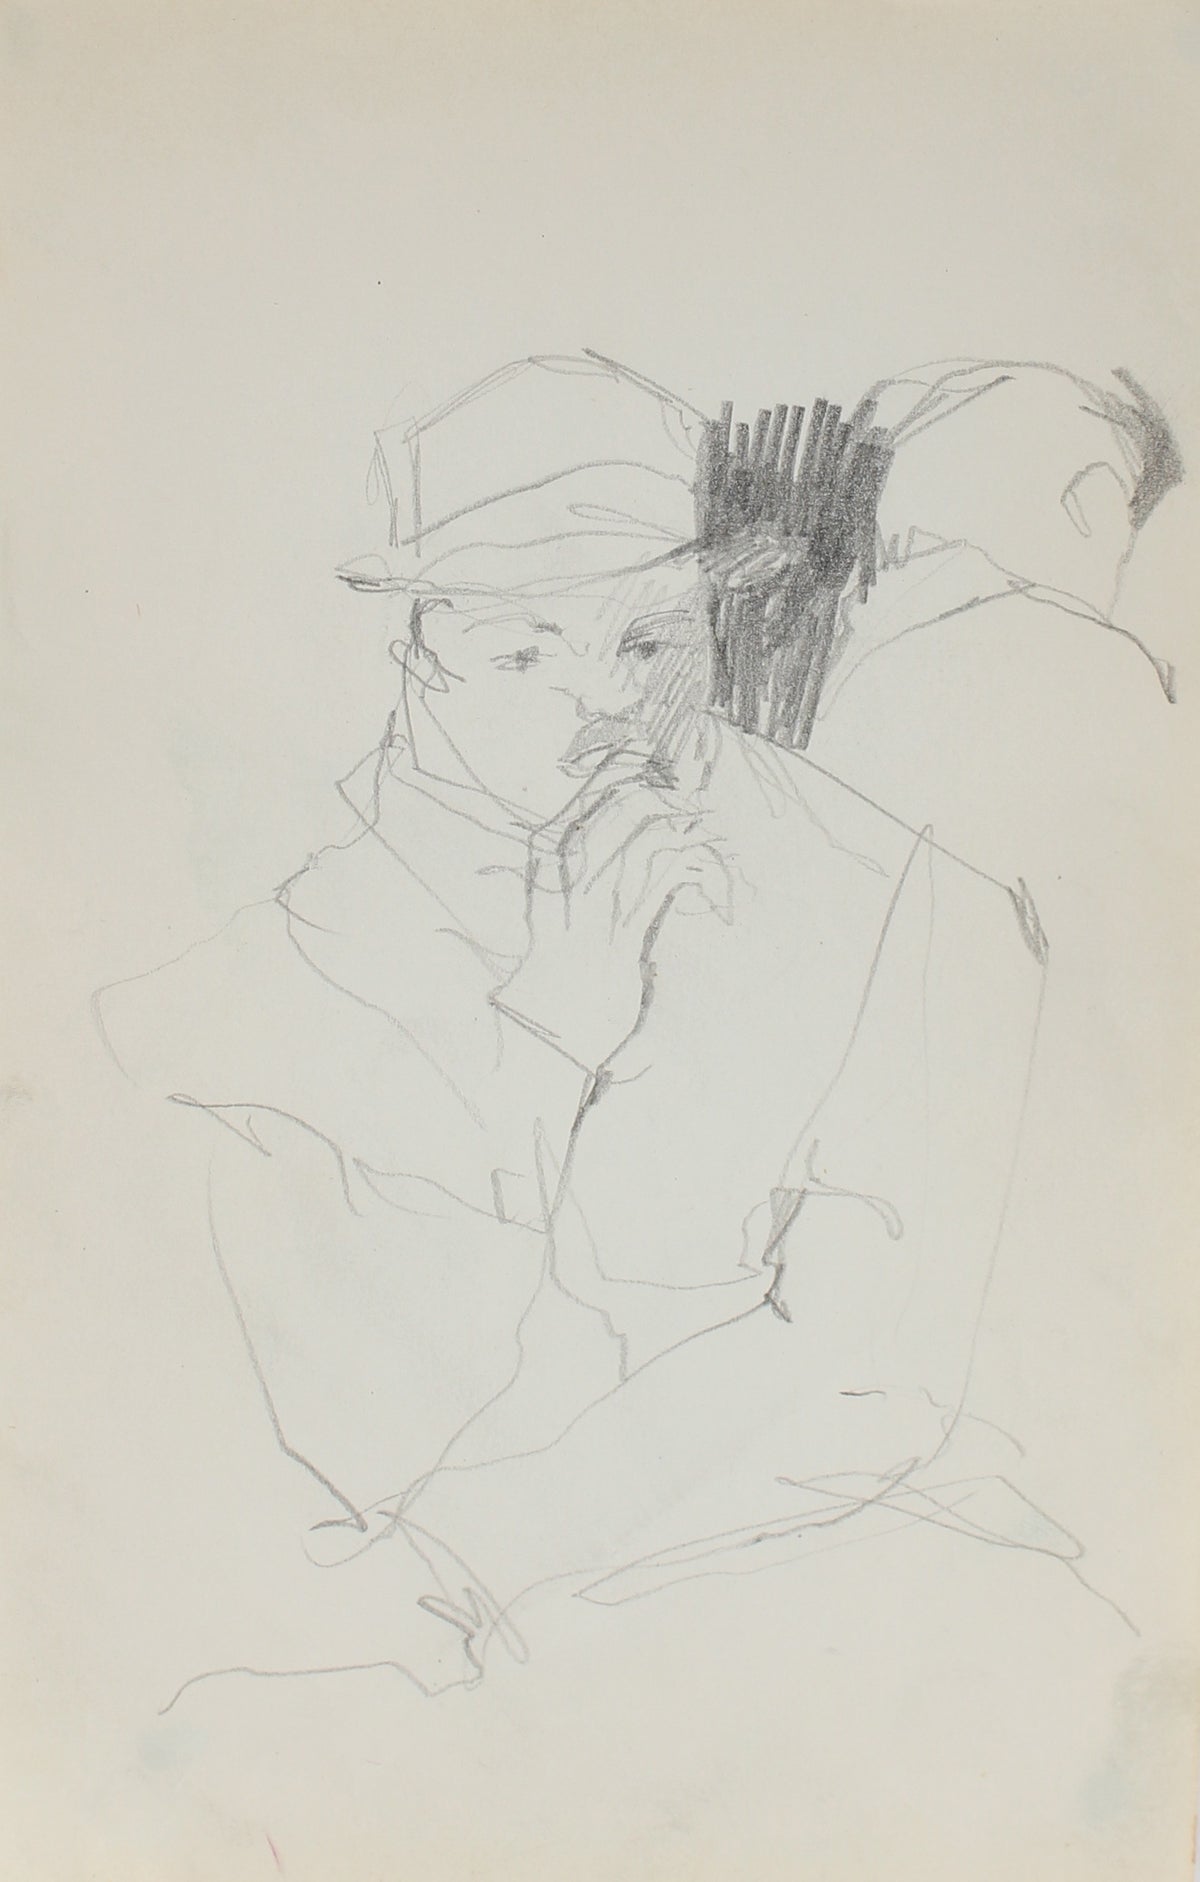 Modernist Sketch of a Man&lt;br&gt;Graphite, 1950-60s&lt;br&gt;&lt;br&gt;#0260